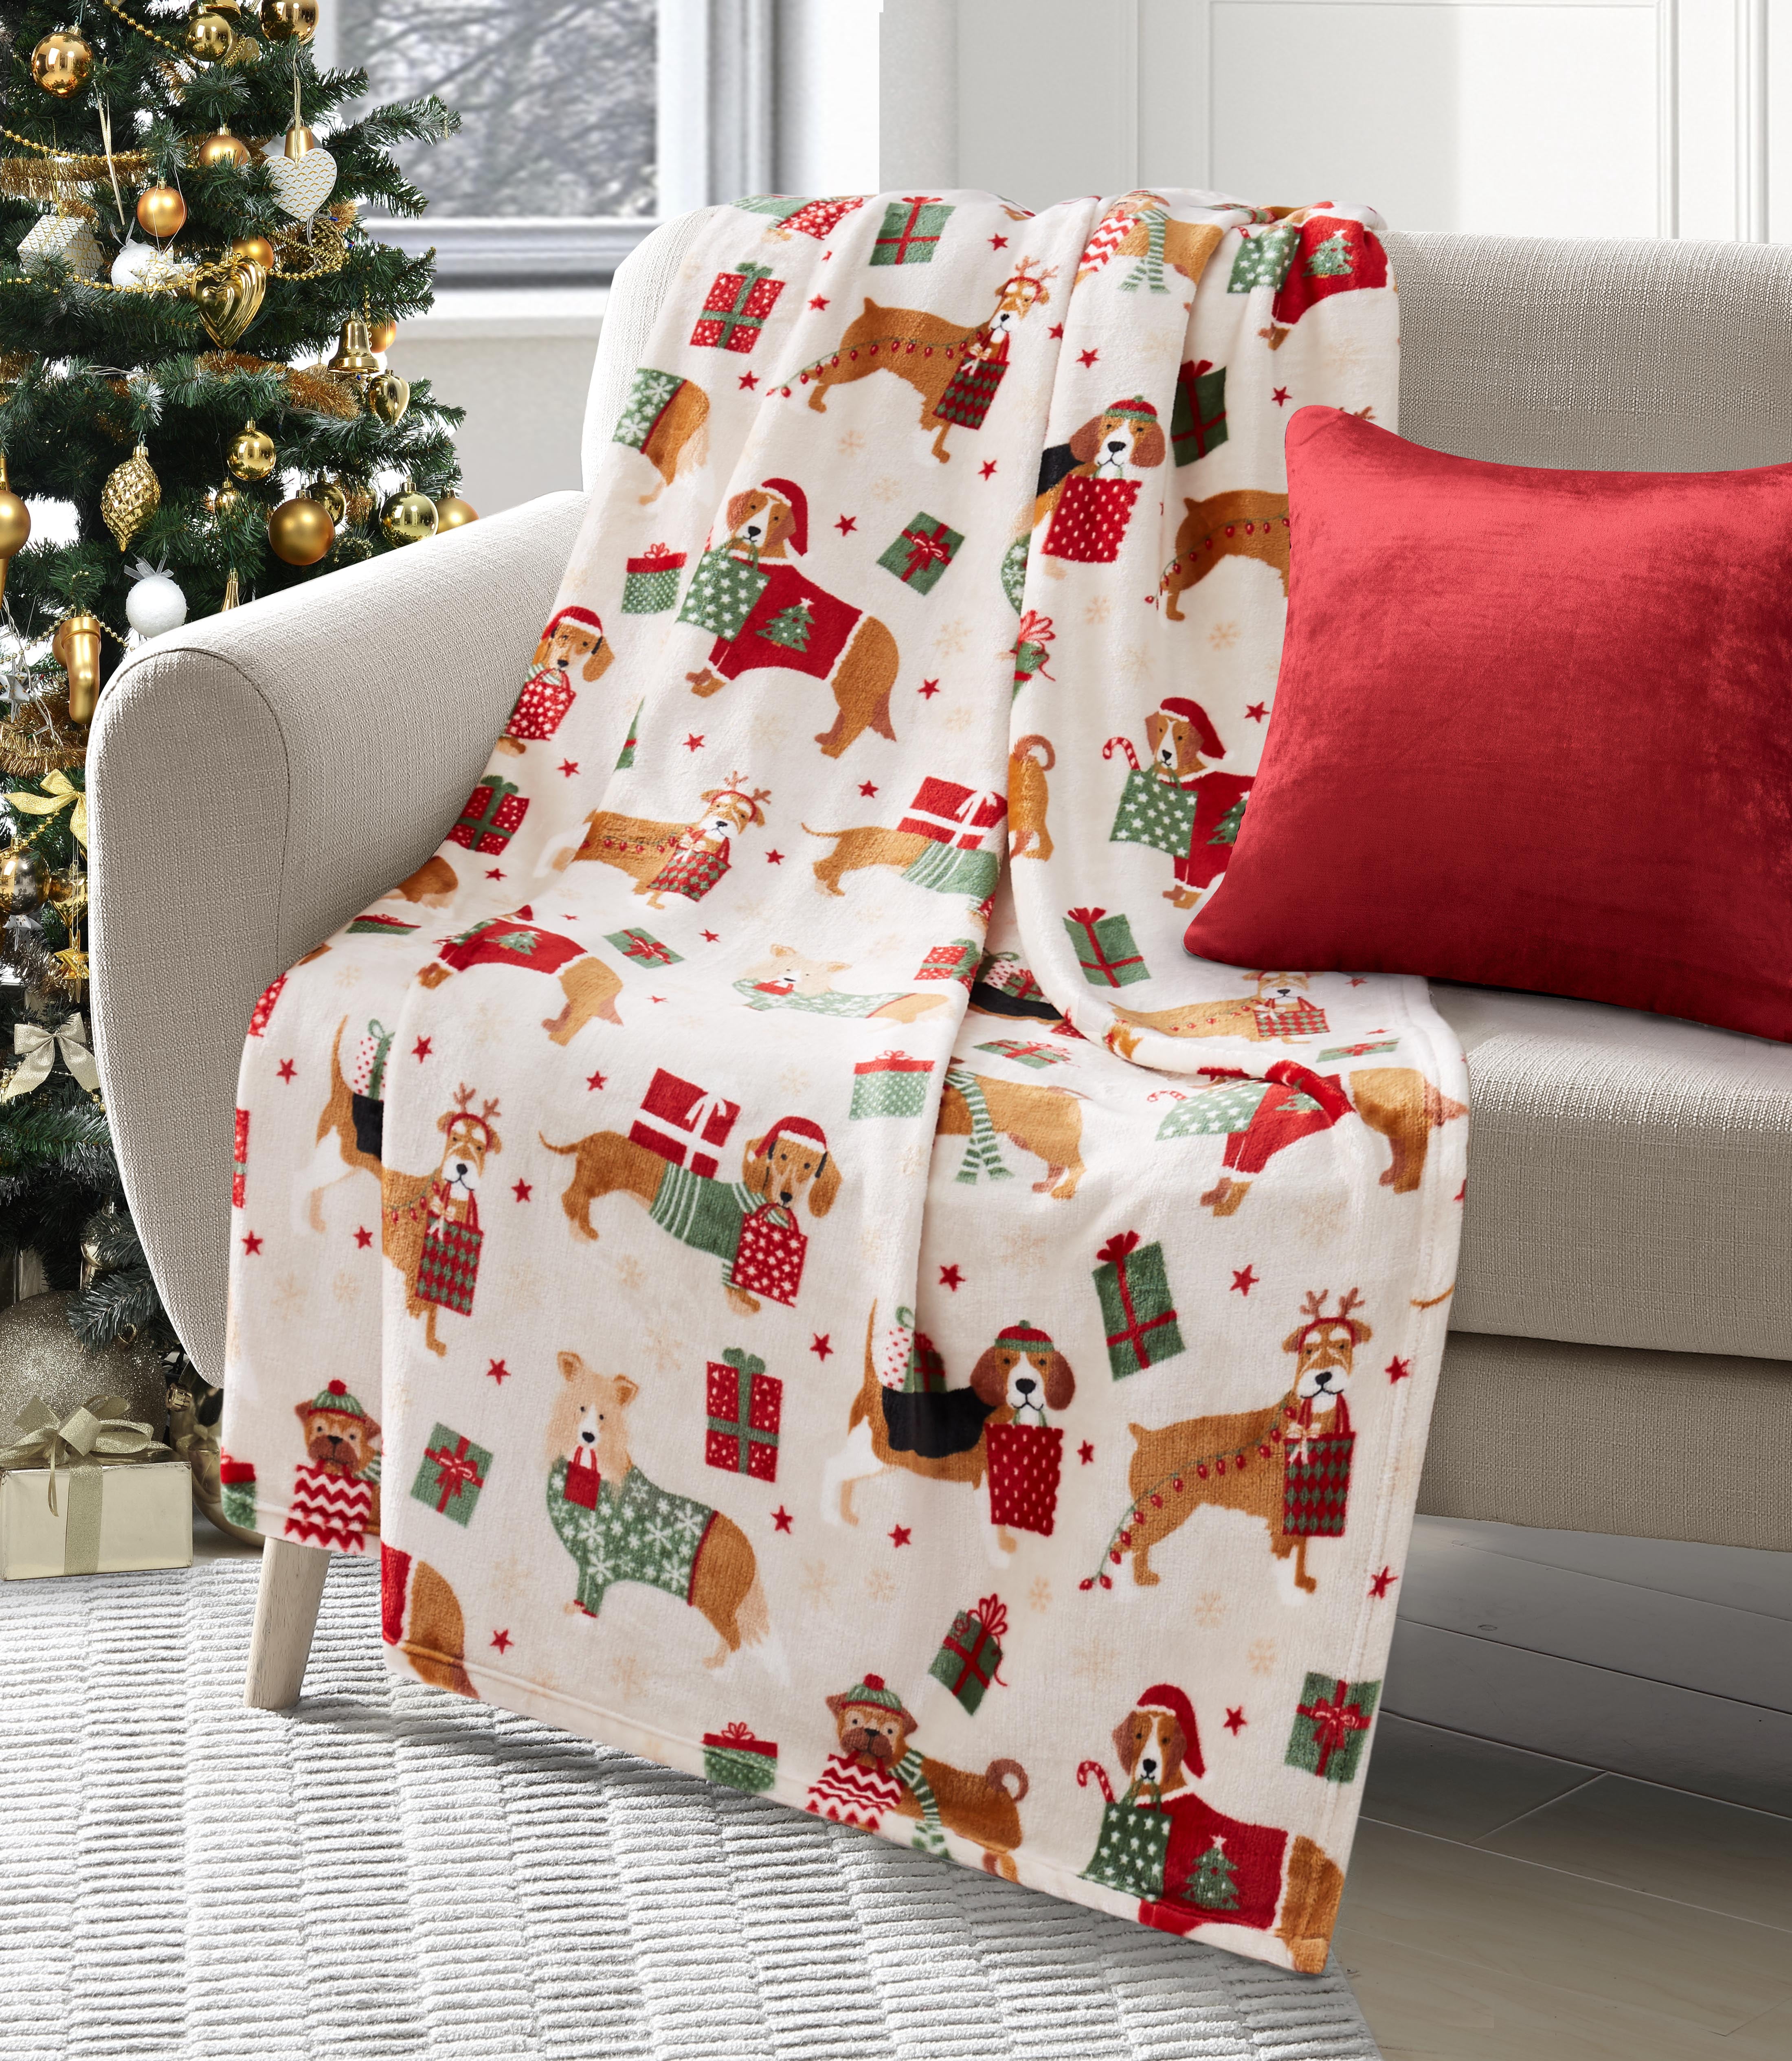 Christmas  Fleece Blanket Happy New Year Gift Christmas Blanket for Adult Kids